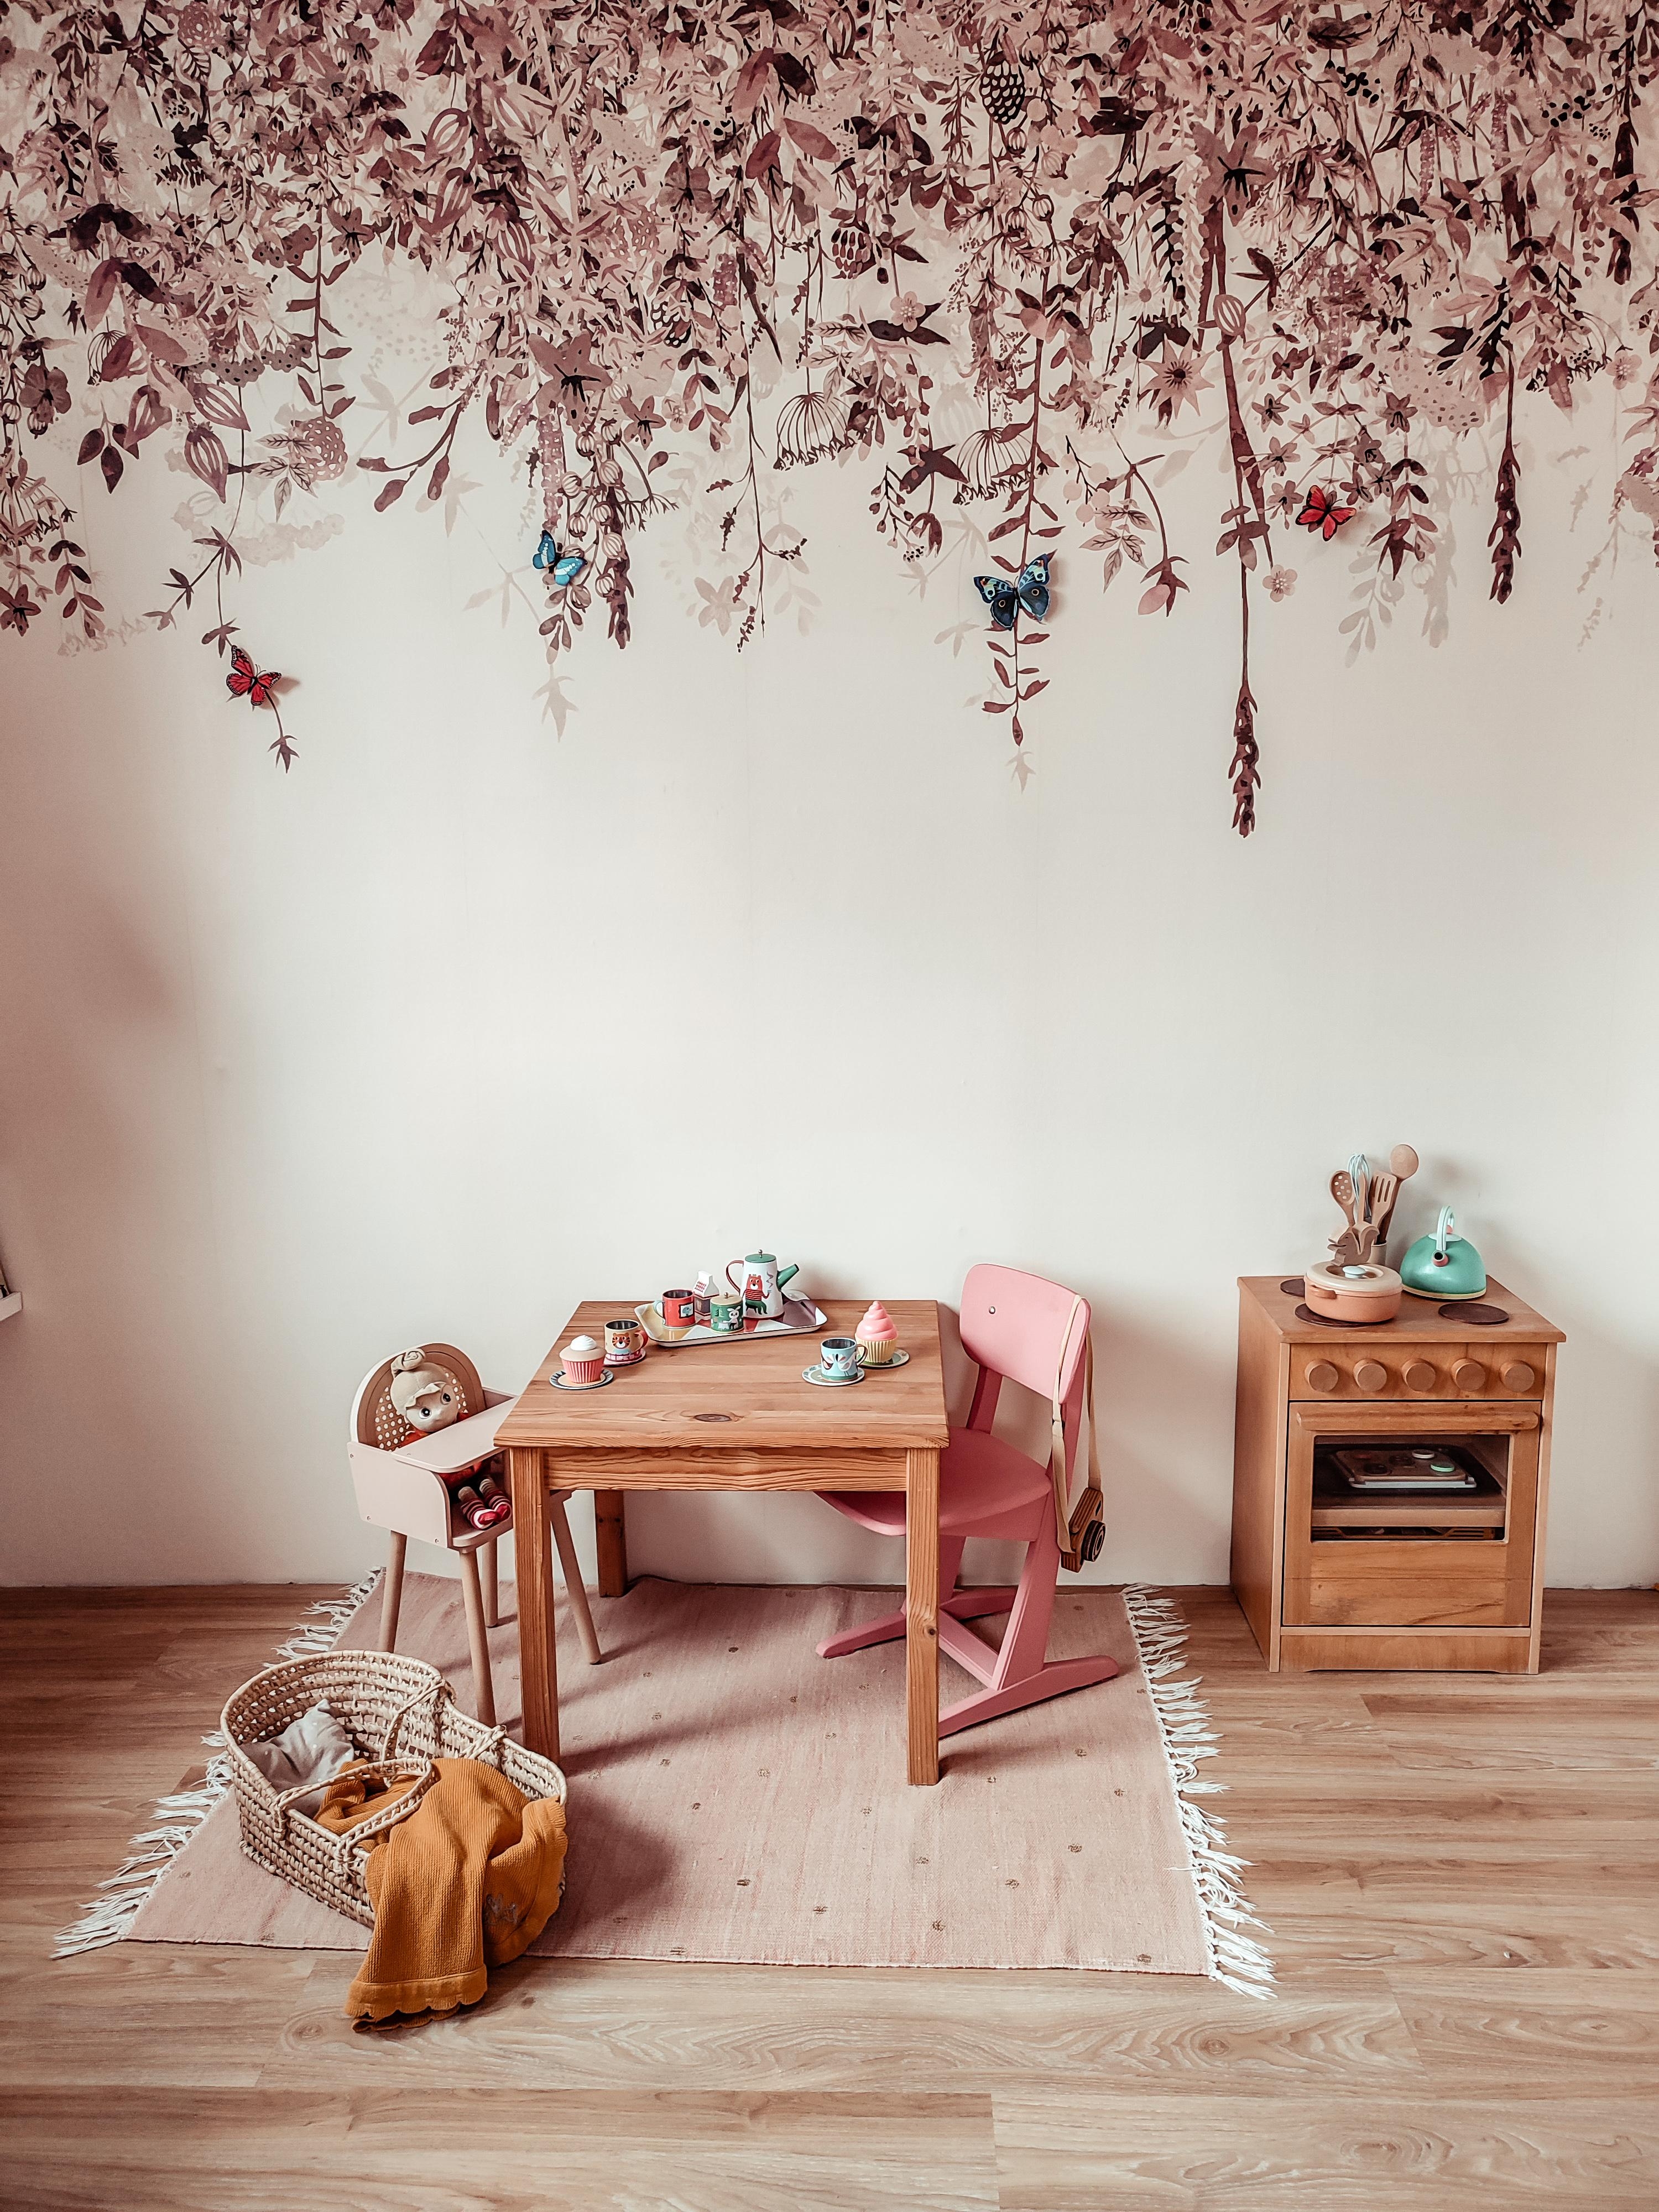 Lieblingswand im Mädchenzimmer 🥰
#fototapete #tapete #kinderzimmer #mädchenzimmer 